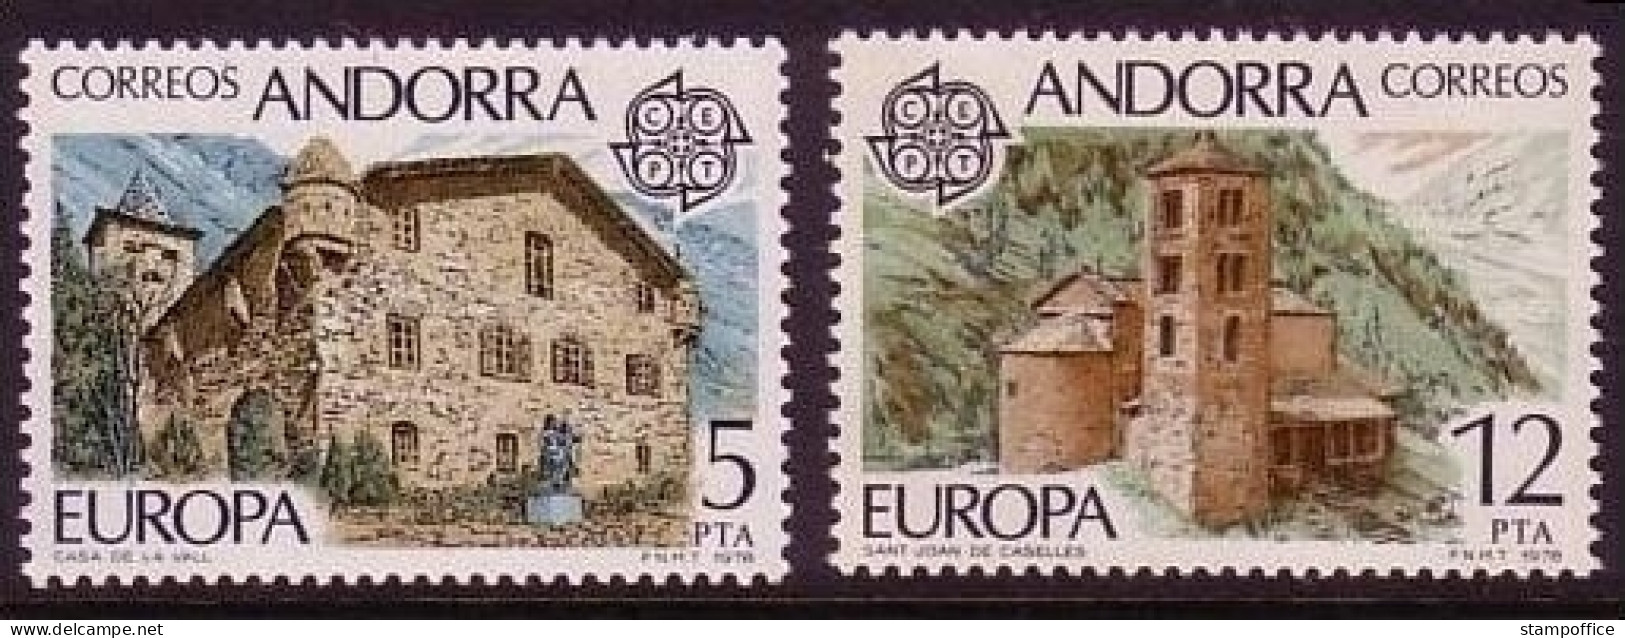 ANDORRA SPANISCH MI-NR. 115-116 POSTFRISCH(MINT) EUROPA 1978 BAUDENKMÄLER KIRCHE RATHAUS - 1978